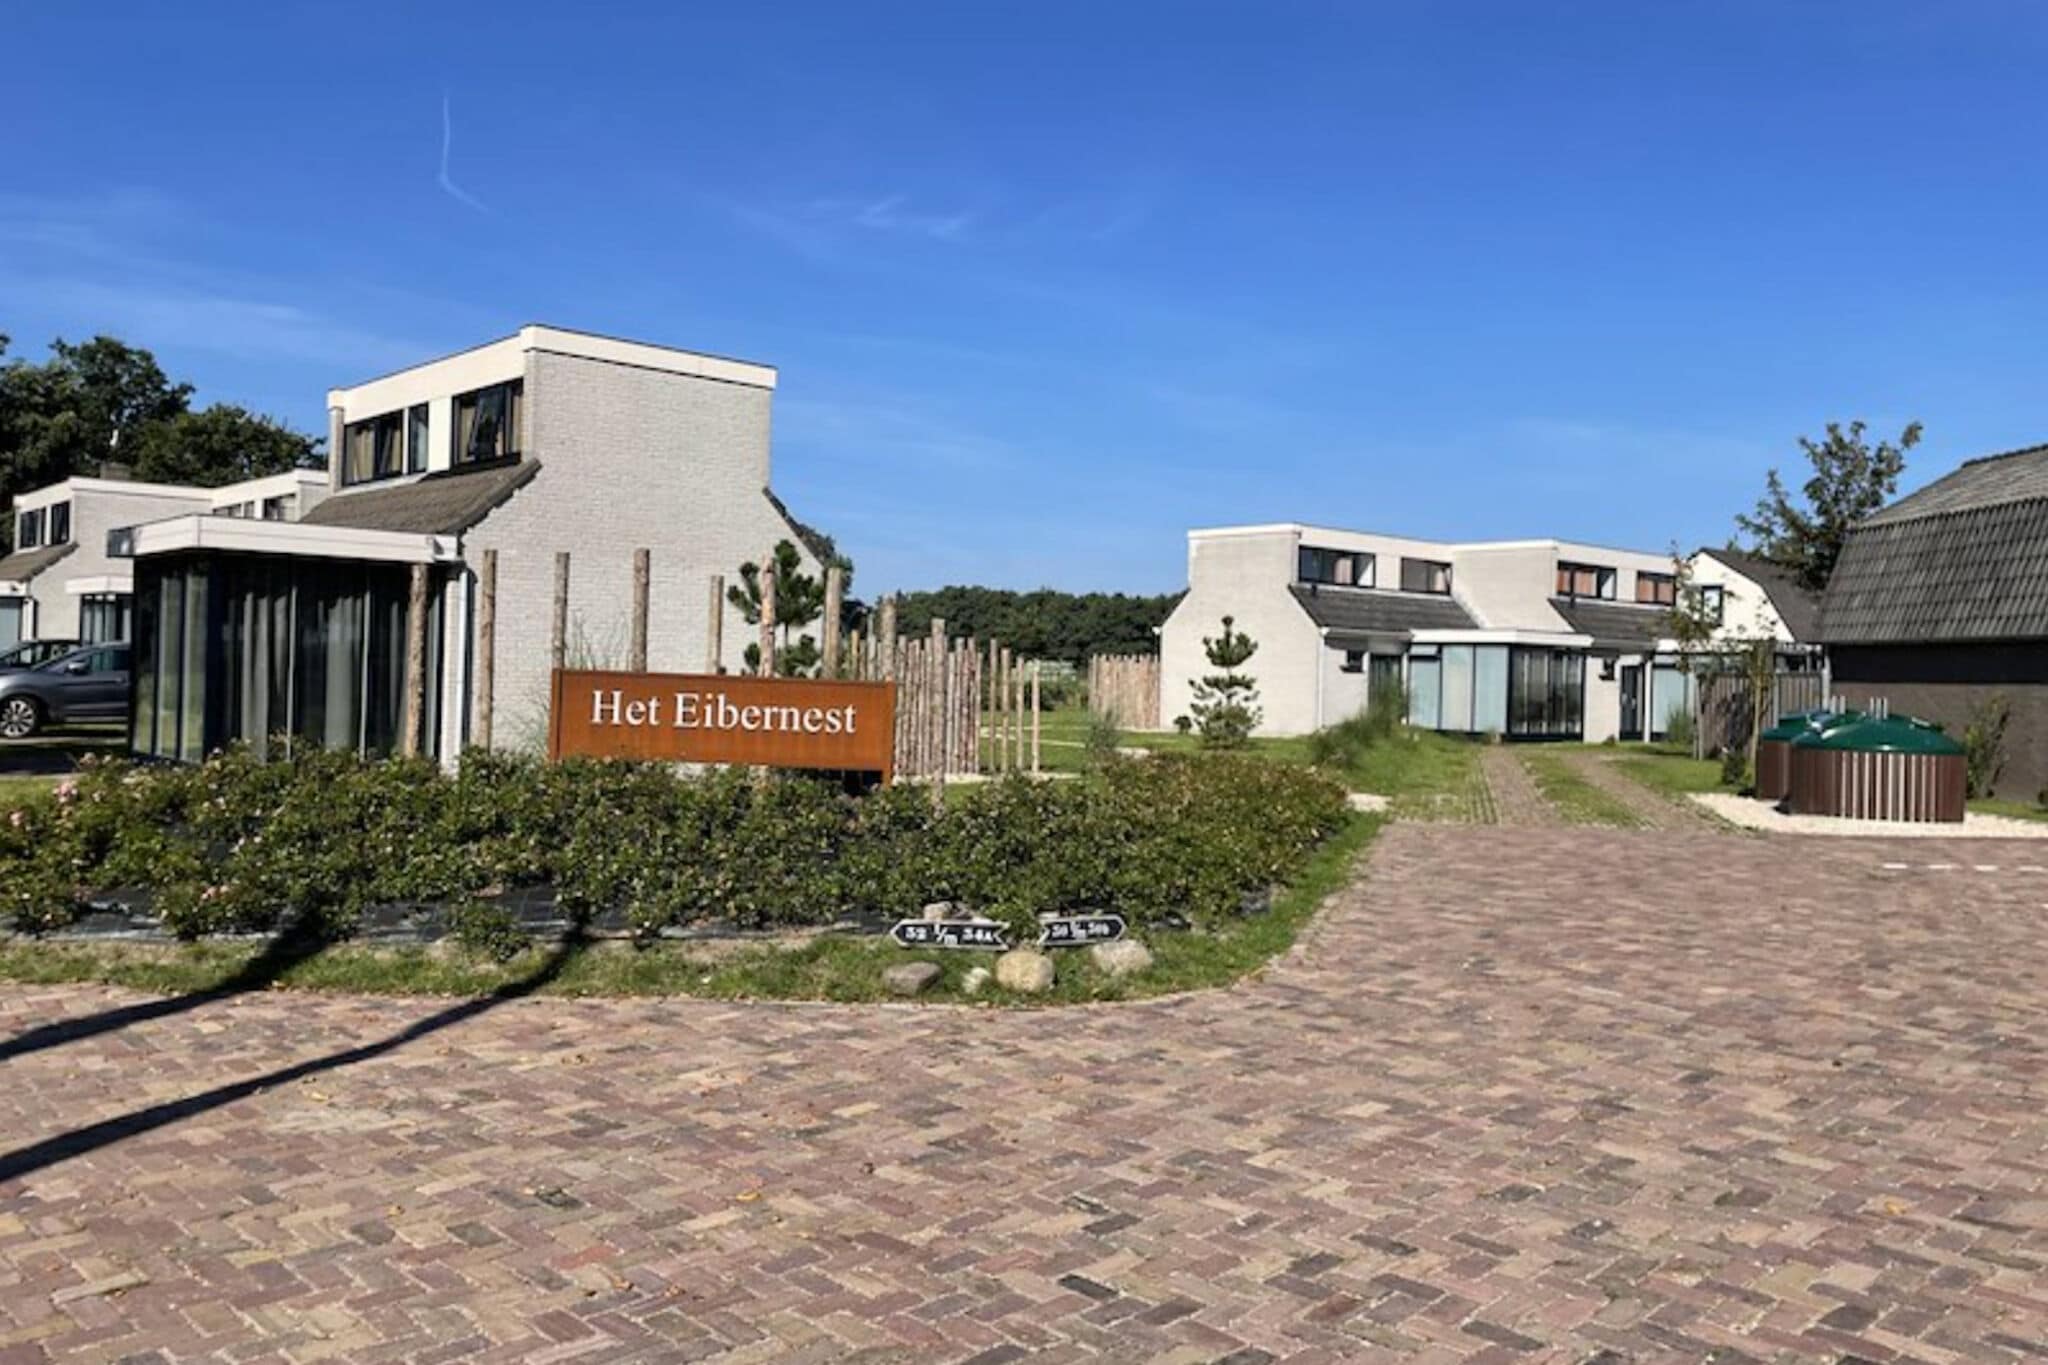 Maison confortable avec une vue imprenable sur un parc de vacances situé à Texel